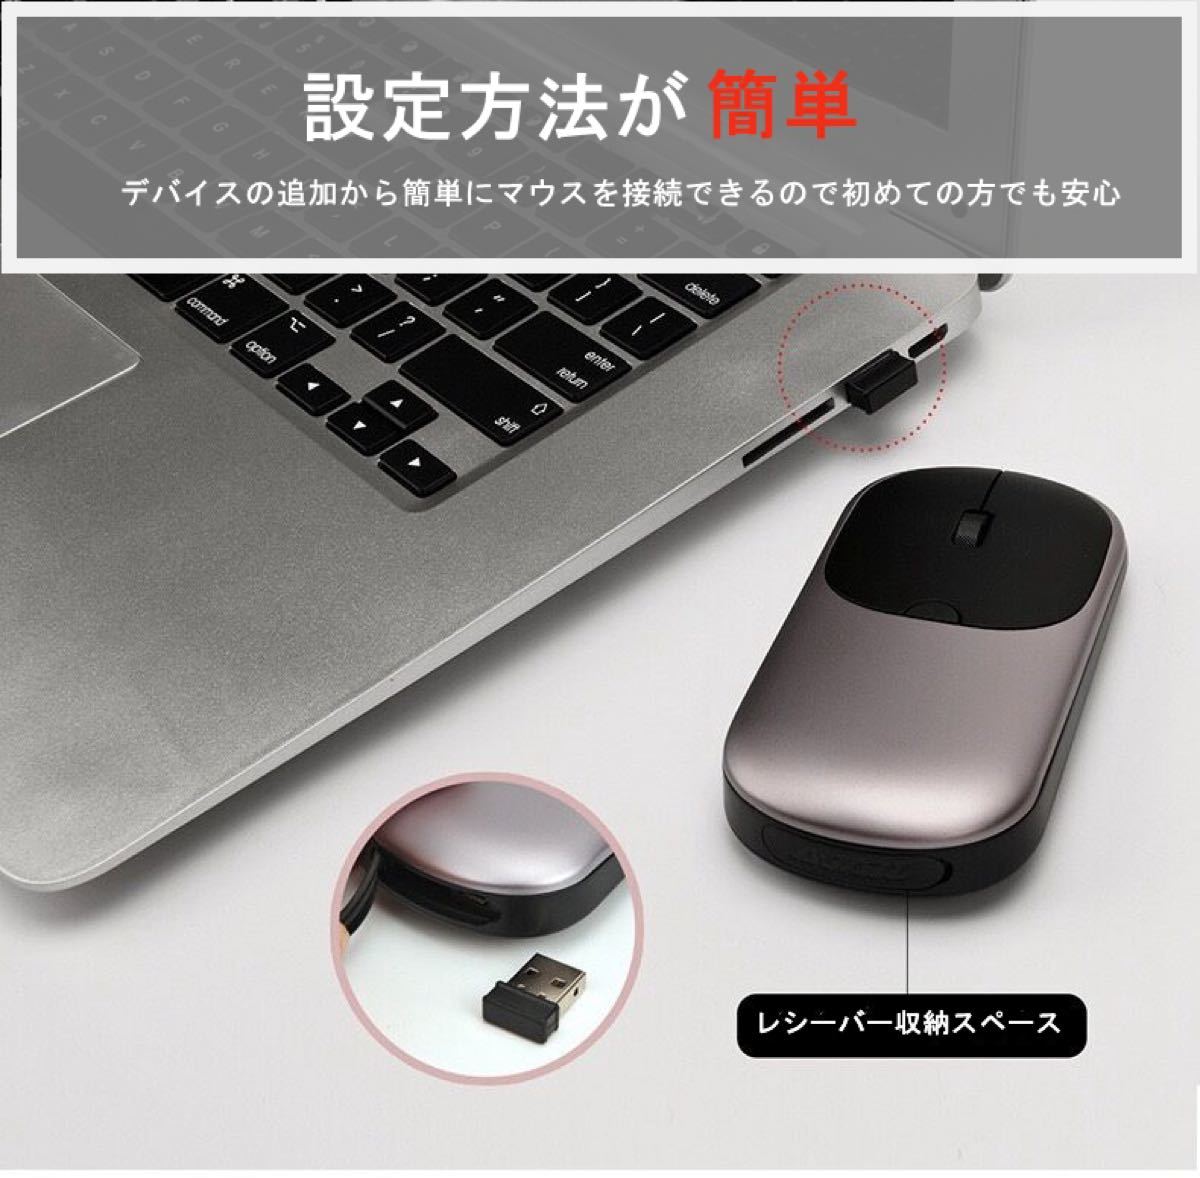 ワイヤレスマウス 充電式 薄型 Bluetoothマウス